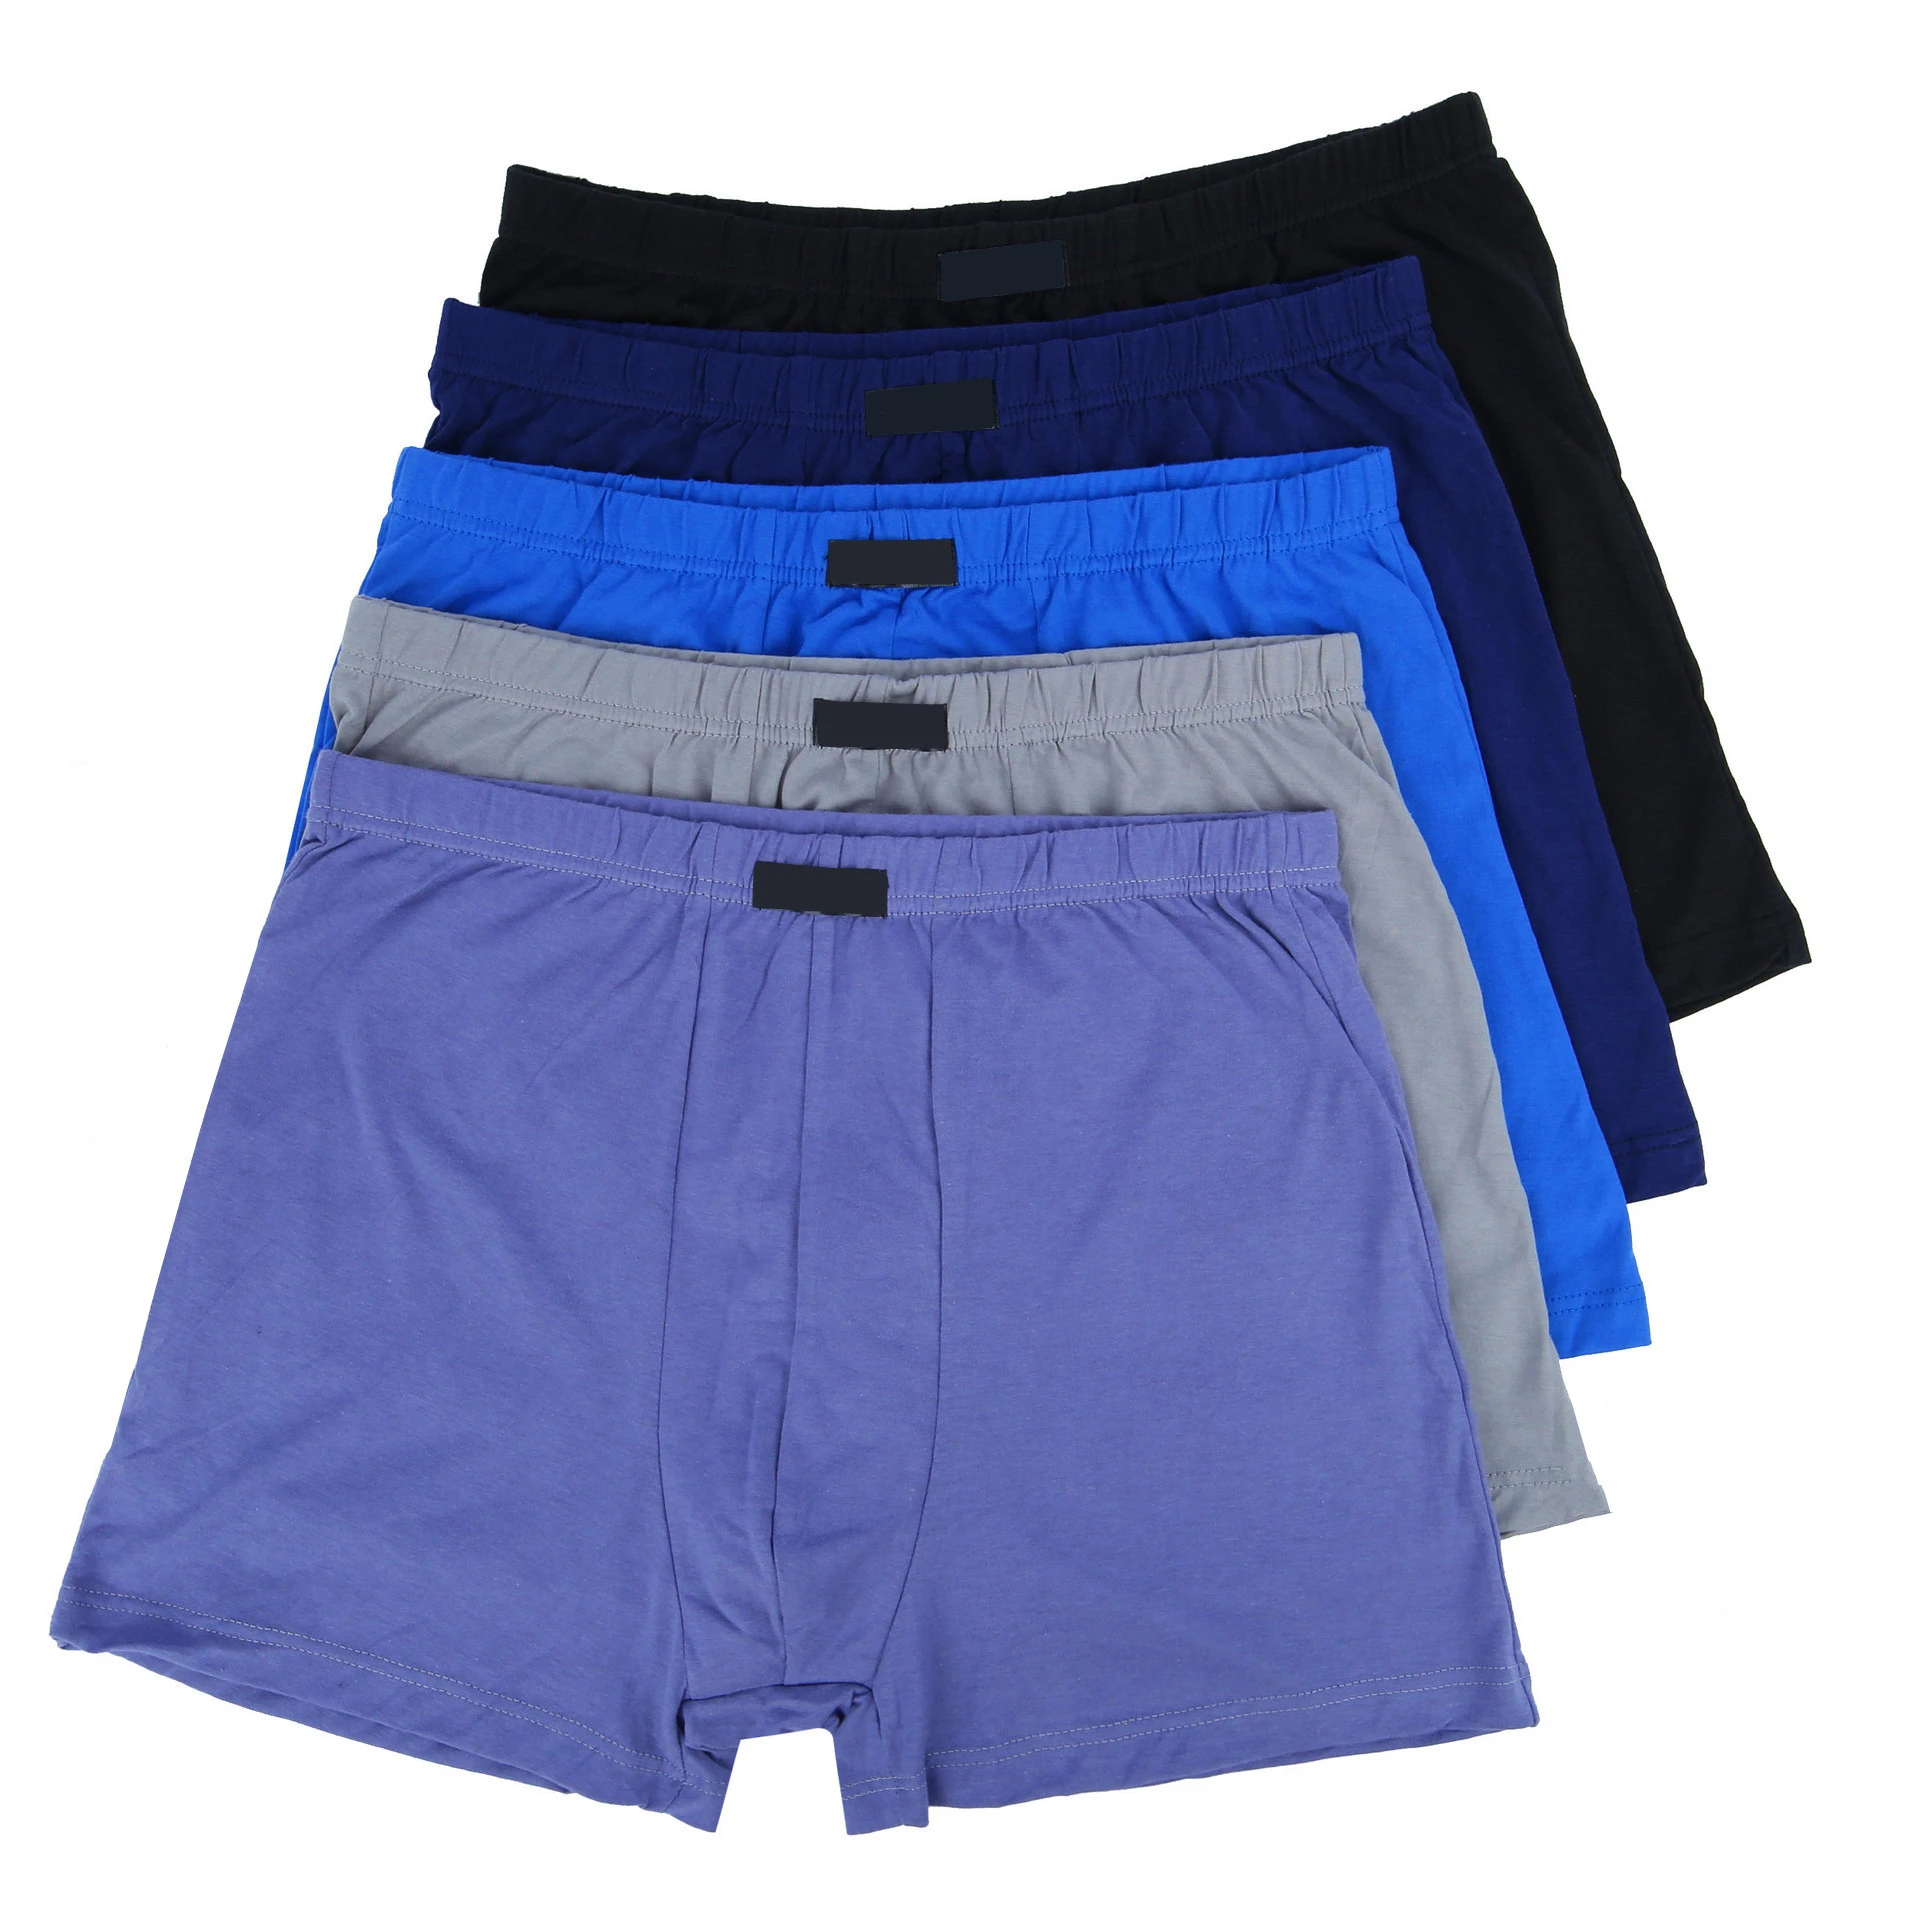 Men Cotton Breathable Underwear High Waist Boxer Briefs Underpants Random Color 